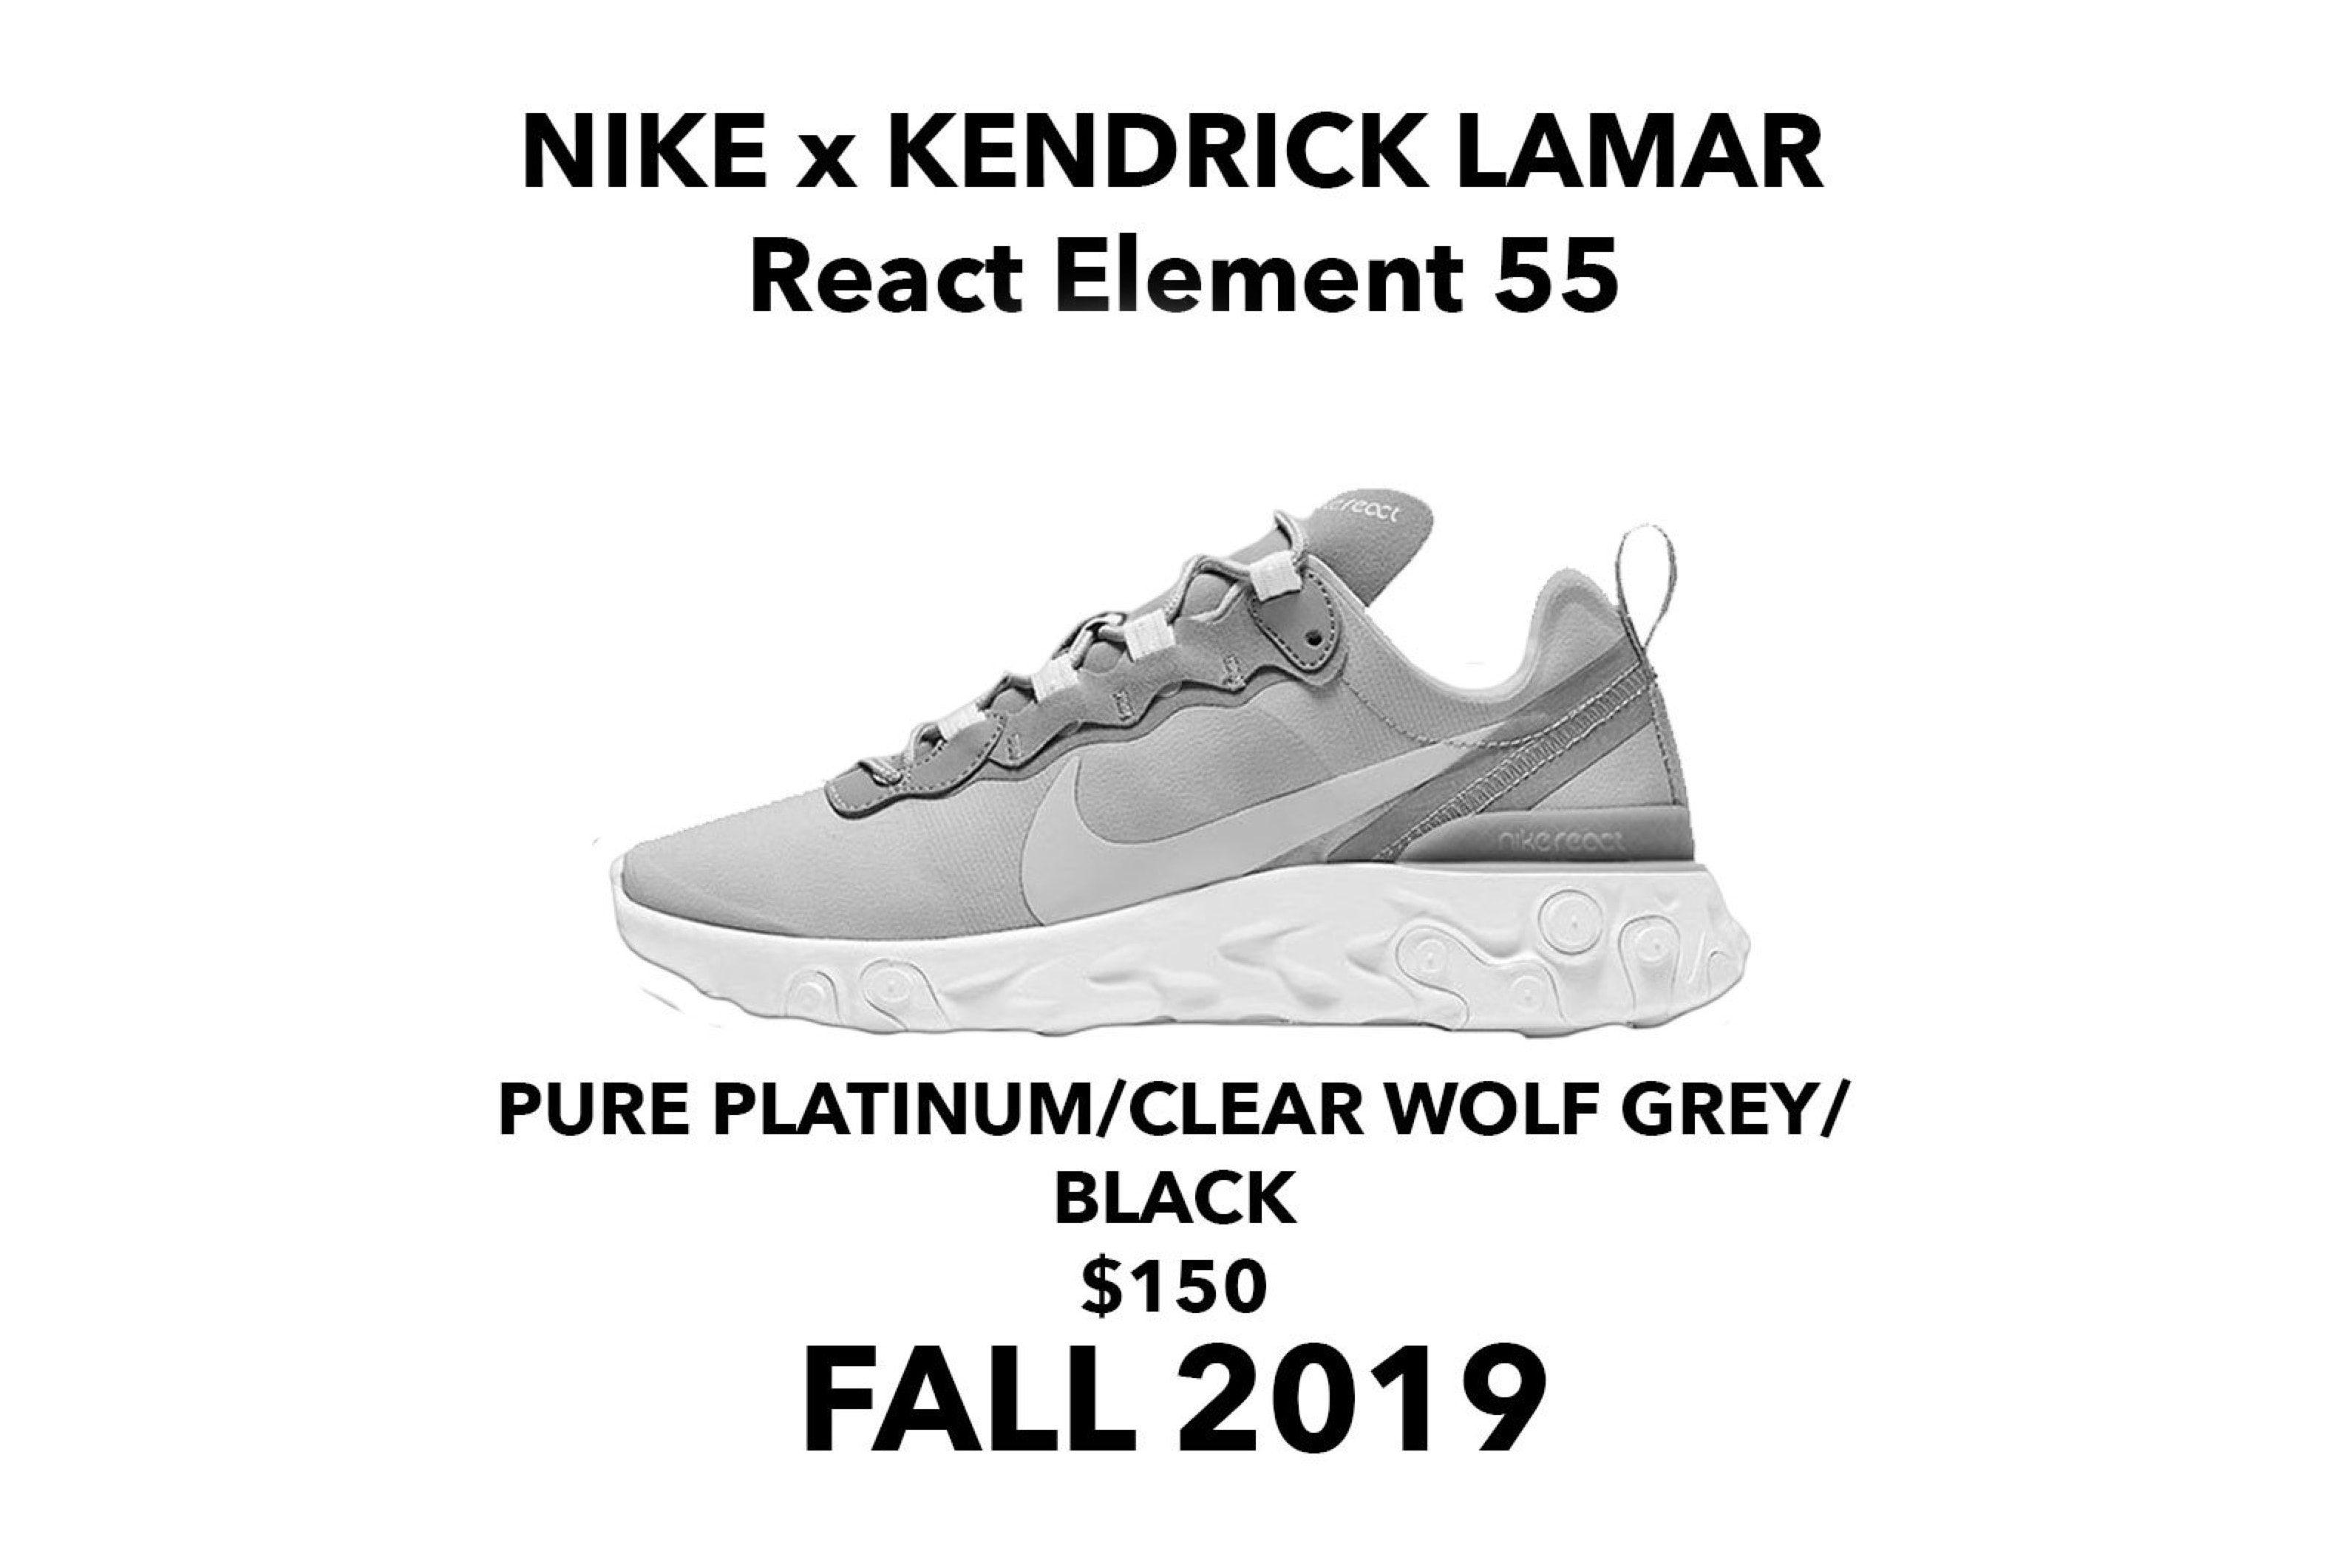 消息稱 Kendrick Lamar 將攜手 Nike 打造全新聯乘鞋款 